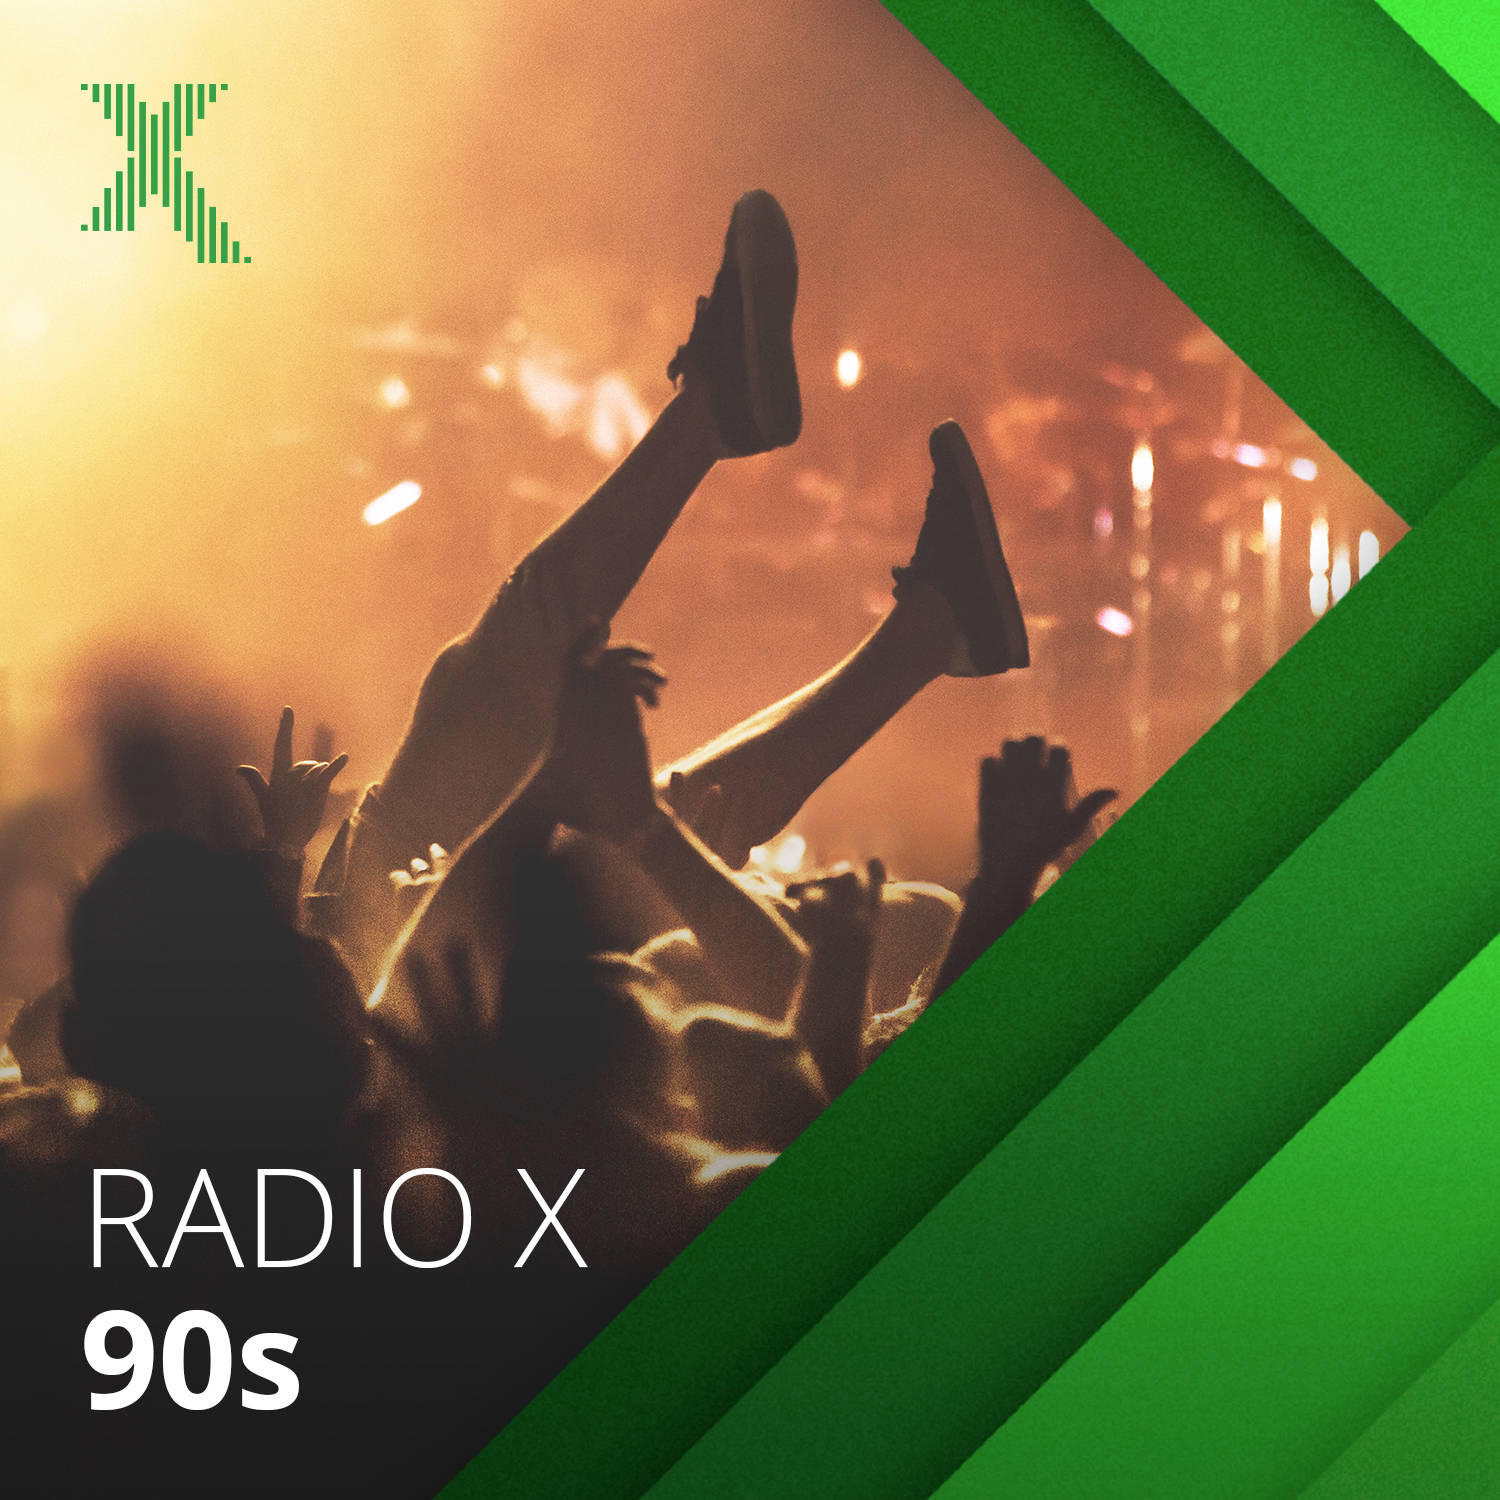 Radio X 90s image